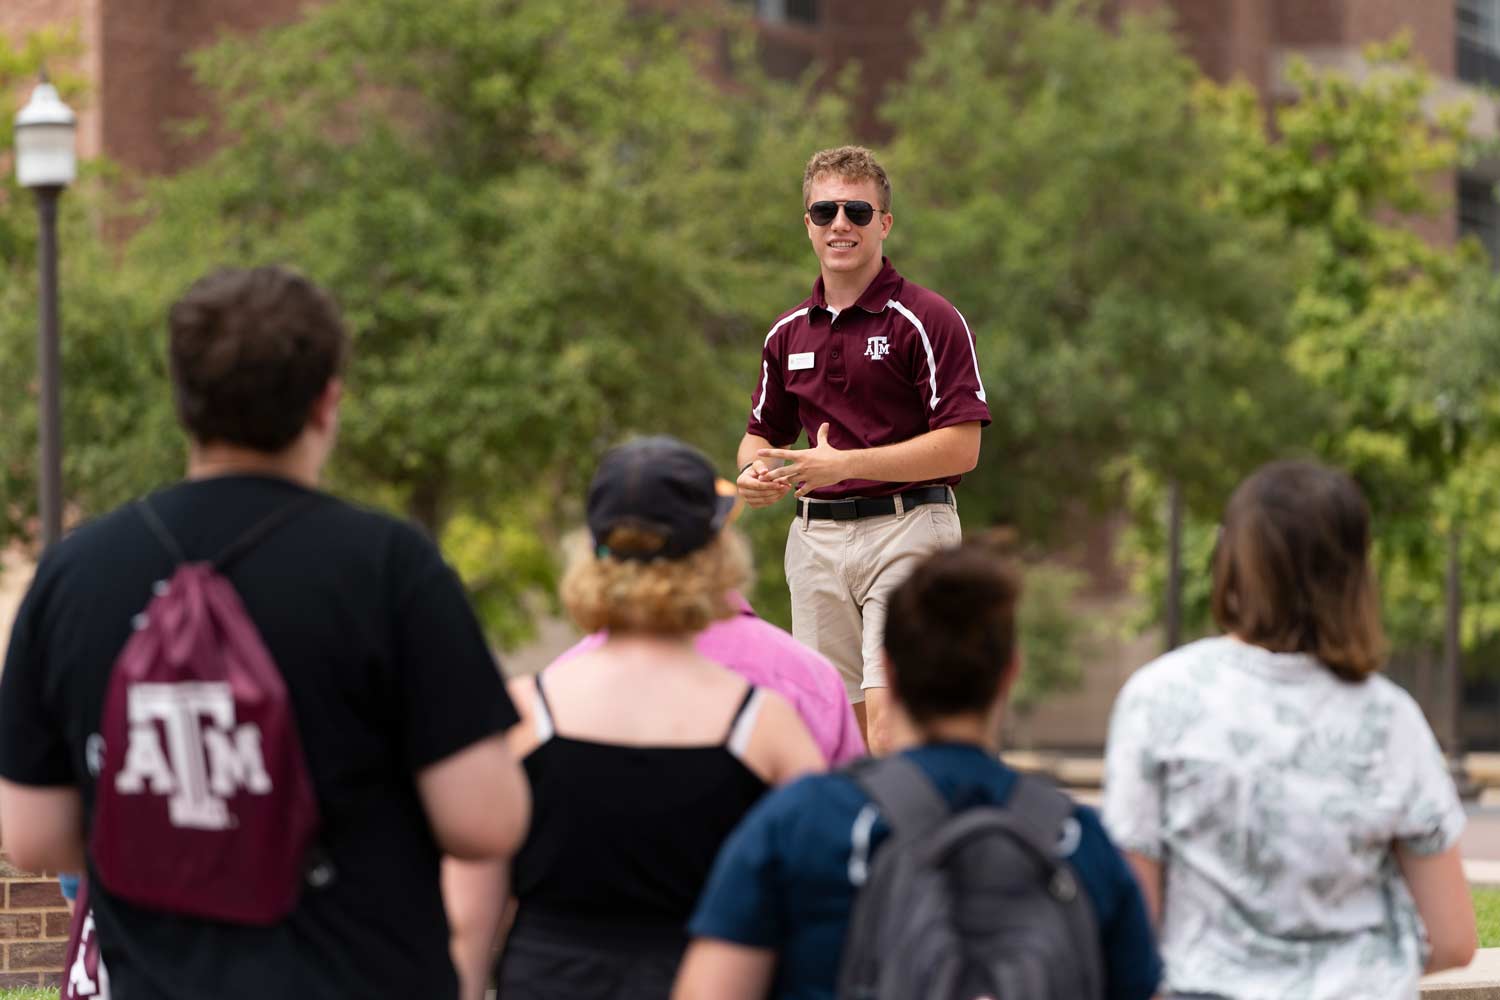 ϲʹ̳ tour guide stands on a bench to address the crowd of prospective students